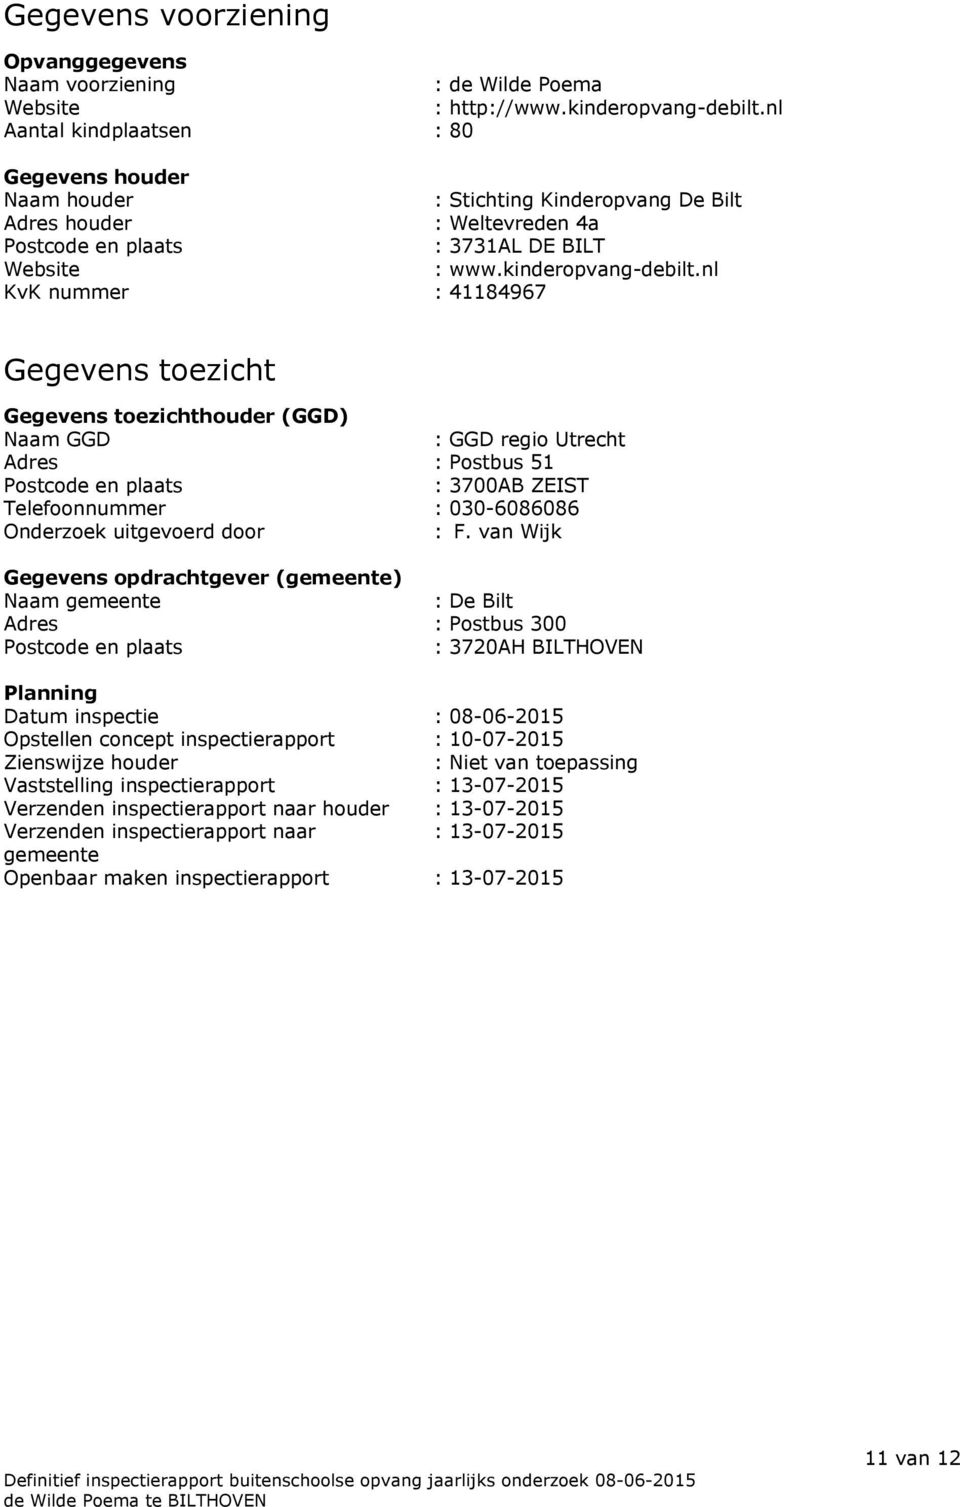 nl KvK nummer : 41184967 Gegevens toezicht Gegevens toezichthouder (GGD) Naam GGD : GGD regio Utrecht Adres : Postbus 51 Postcode en plaats : 3700AB ZEIST Telefoonnummer : 030-6086086 Onderzoek